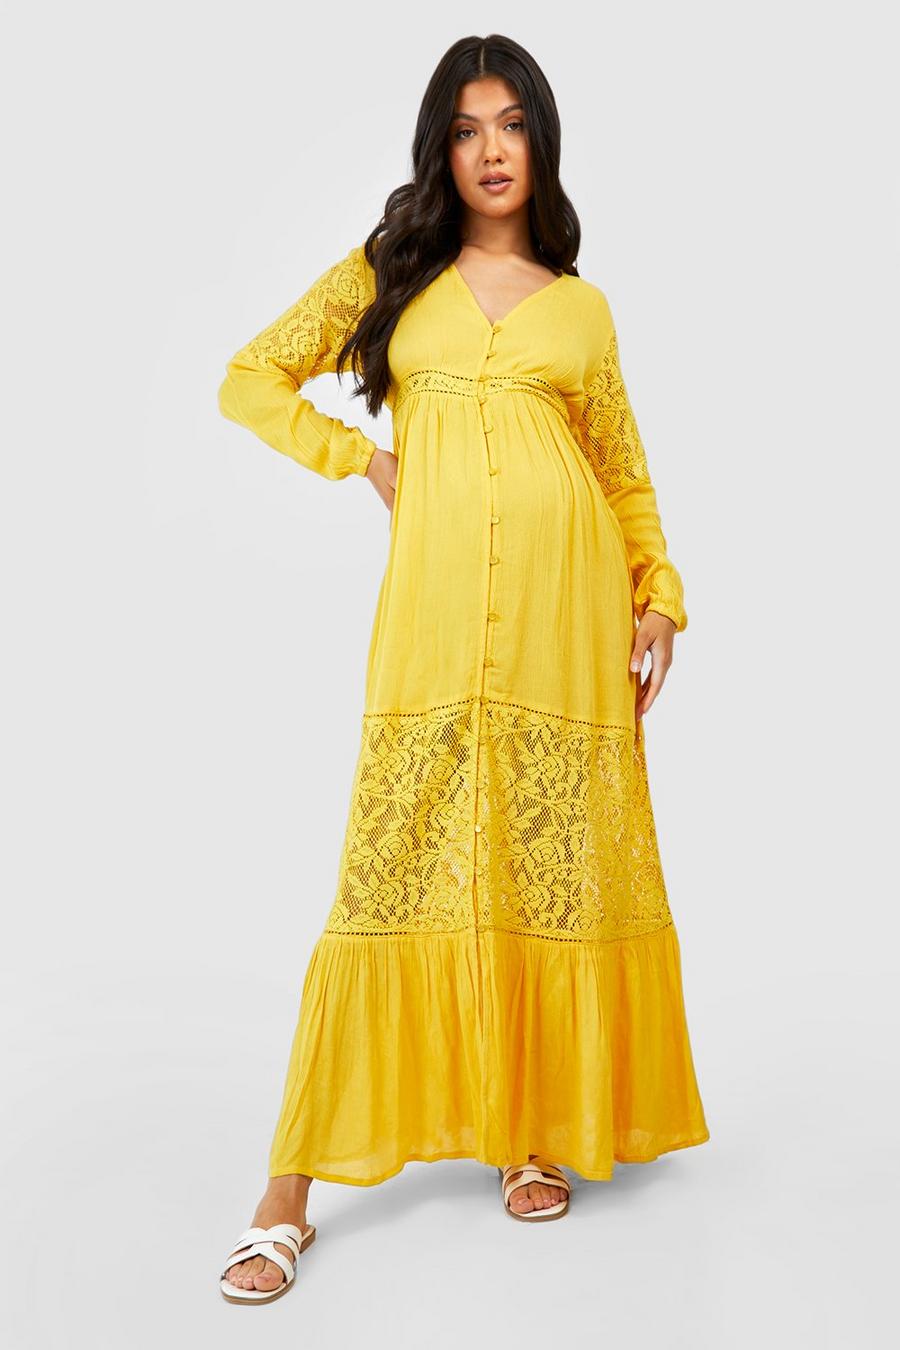 Ochre yellow Maternity Boho Lace Insert Maxi Dress